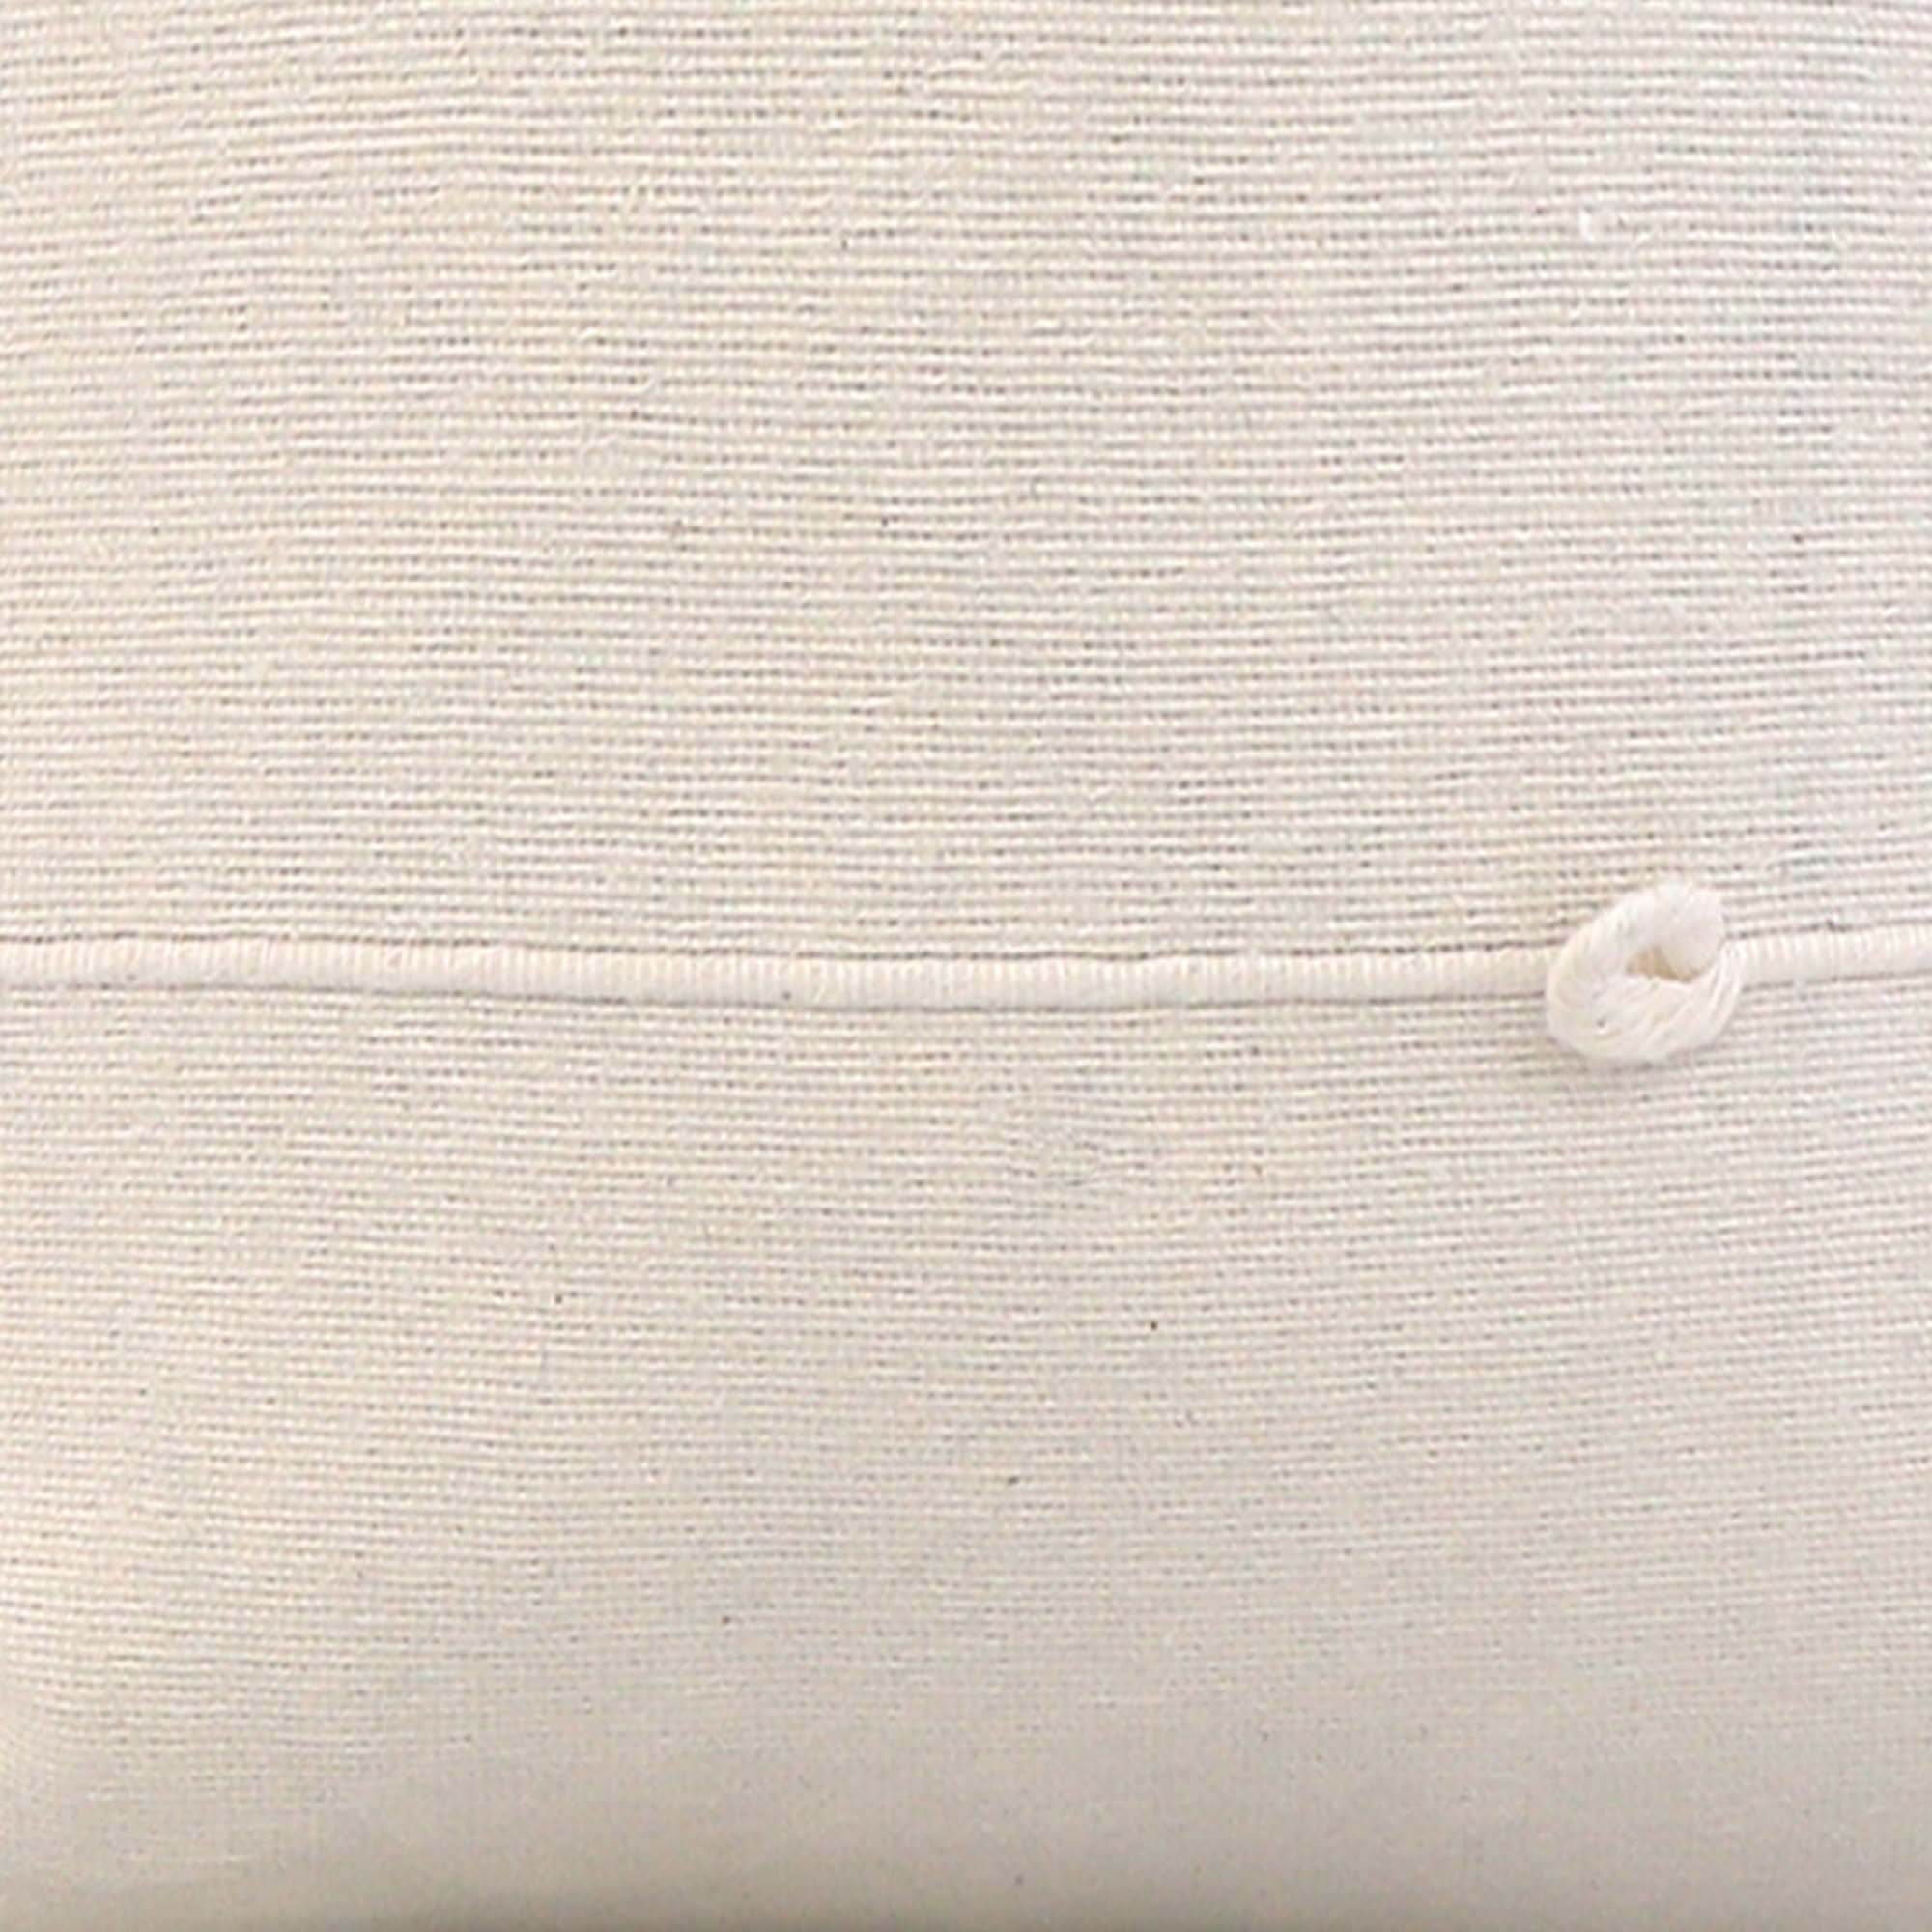 Globo White Stripe / 4x4 inch Fabric Swatch